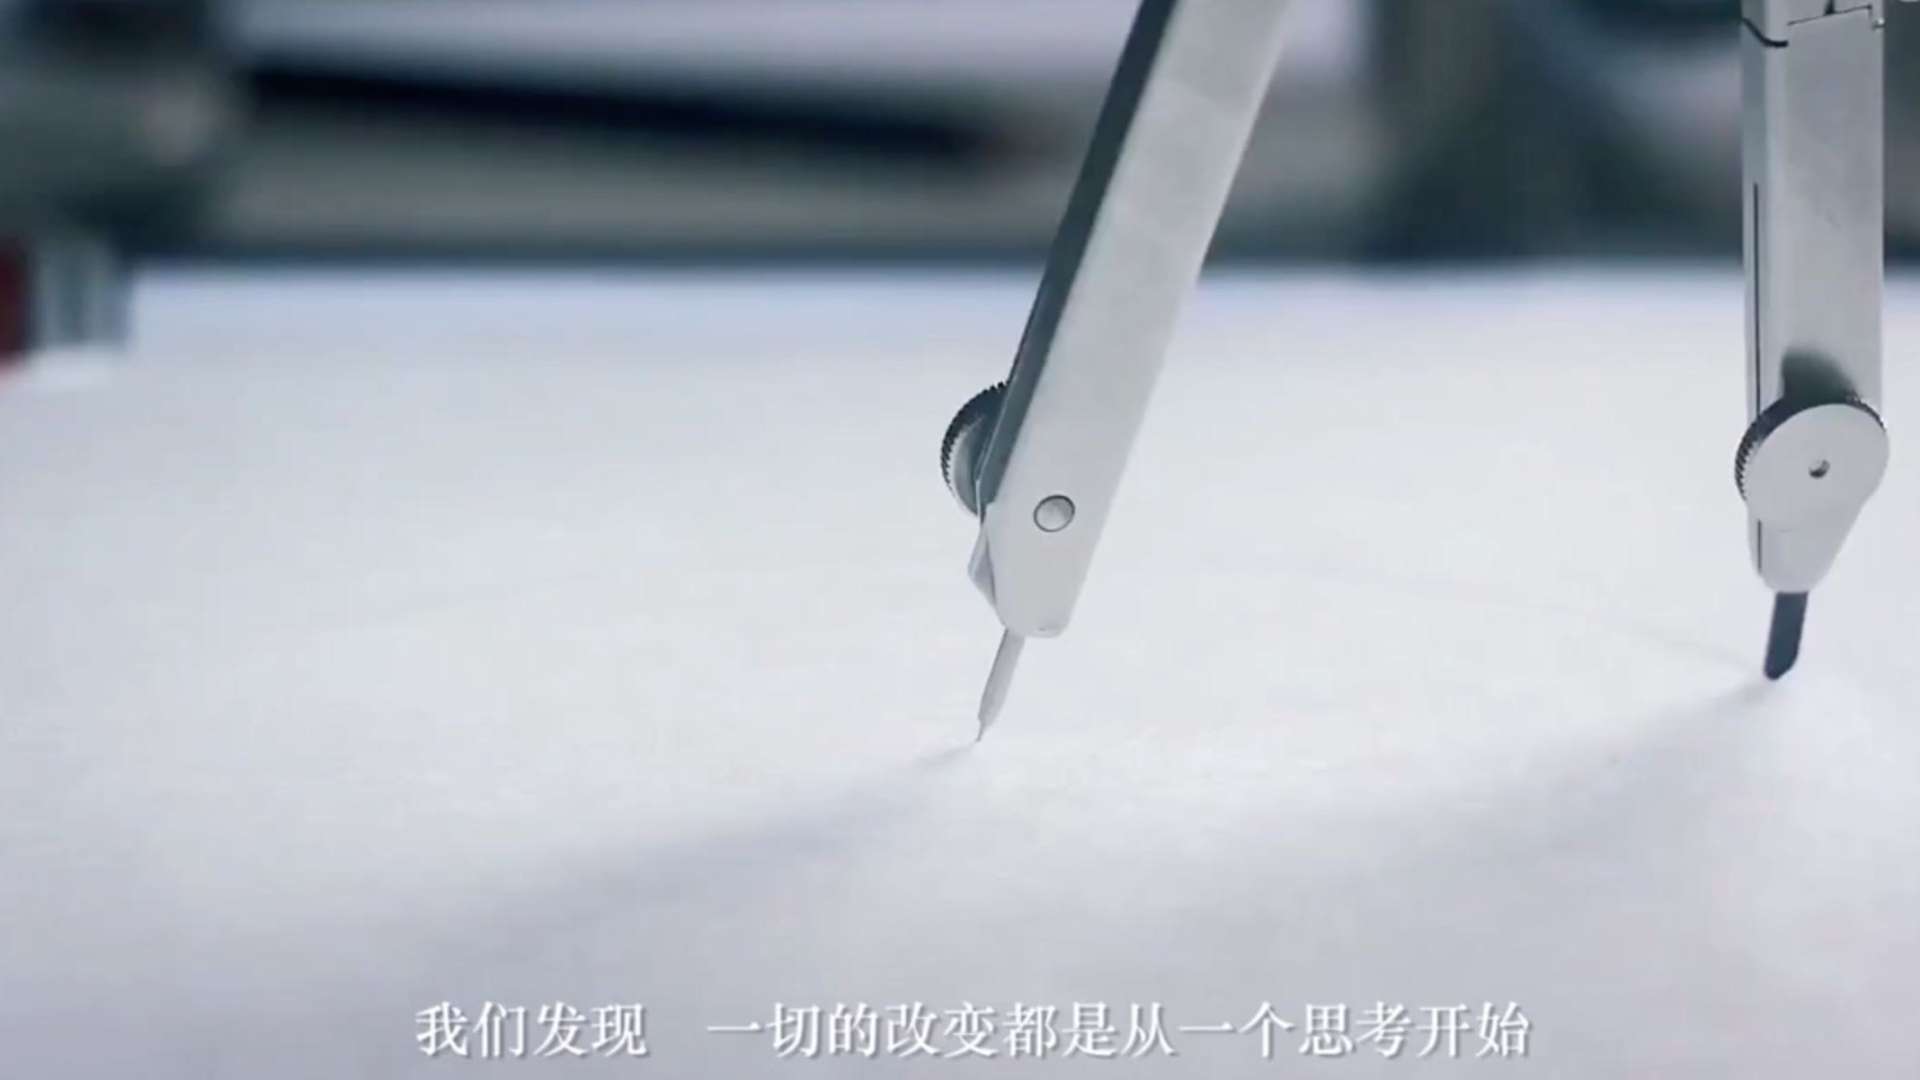 上海拿森汽车电子有限公司企业宣传片